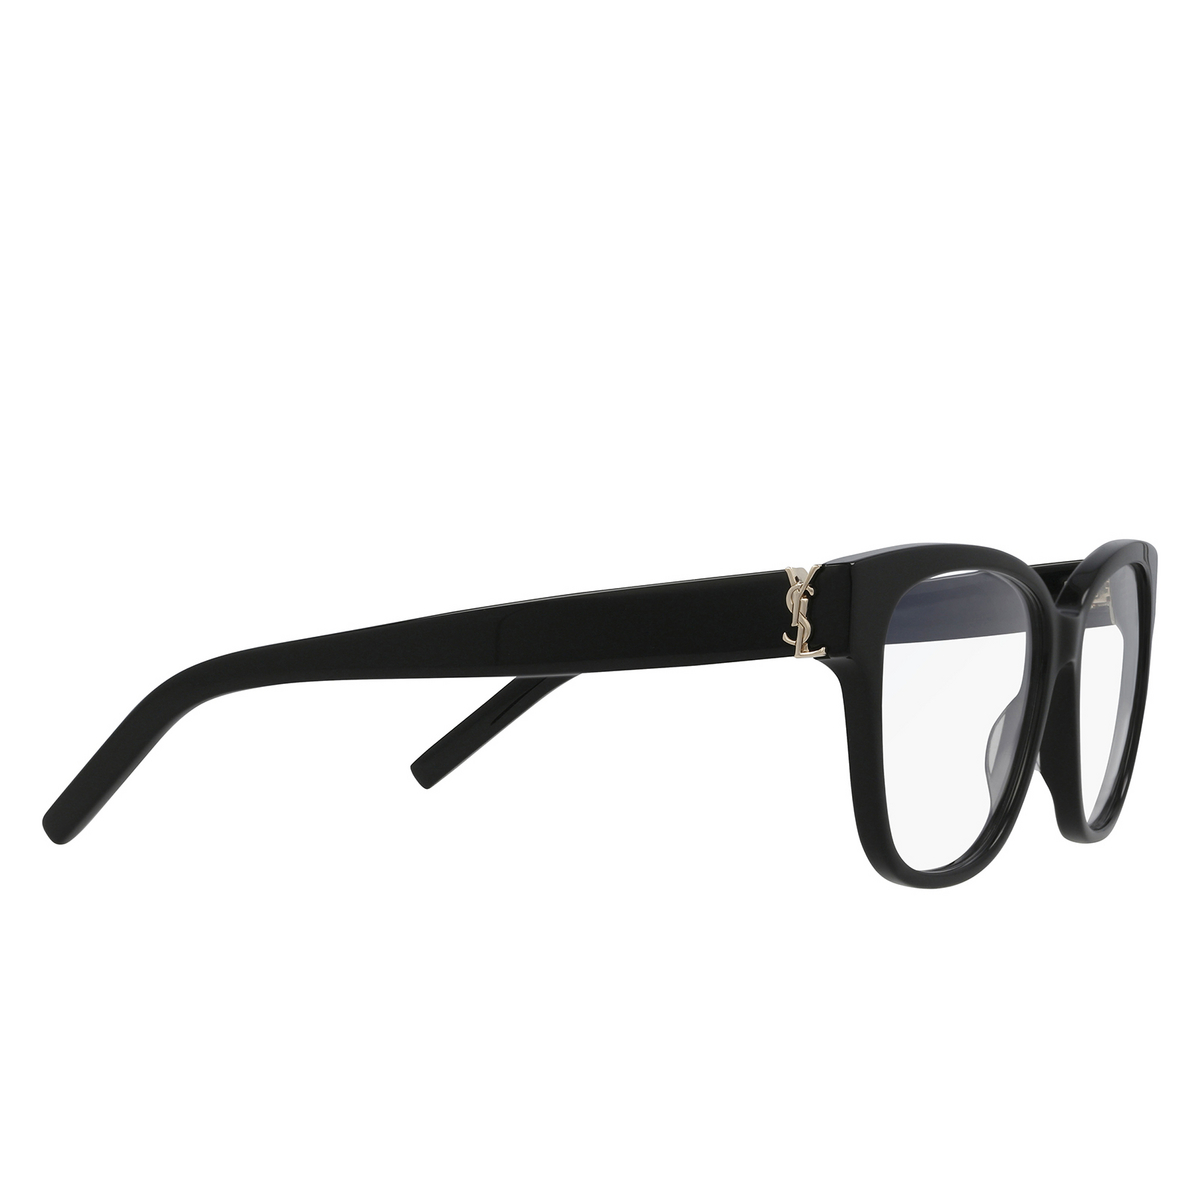 Saint Laurent® Square Eyeglasses: SL M33 color Black 003 - 2/3.